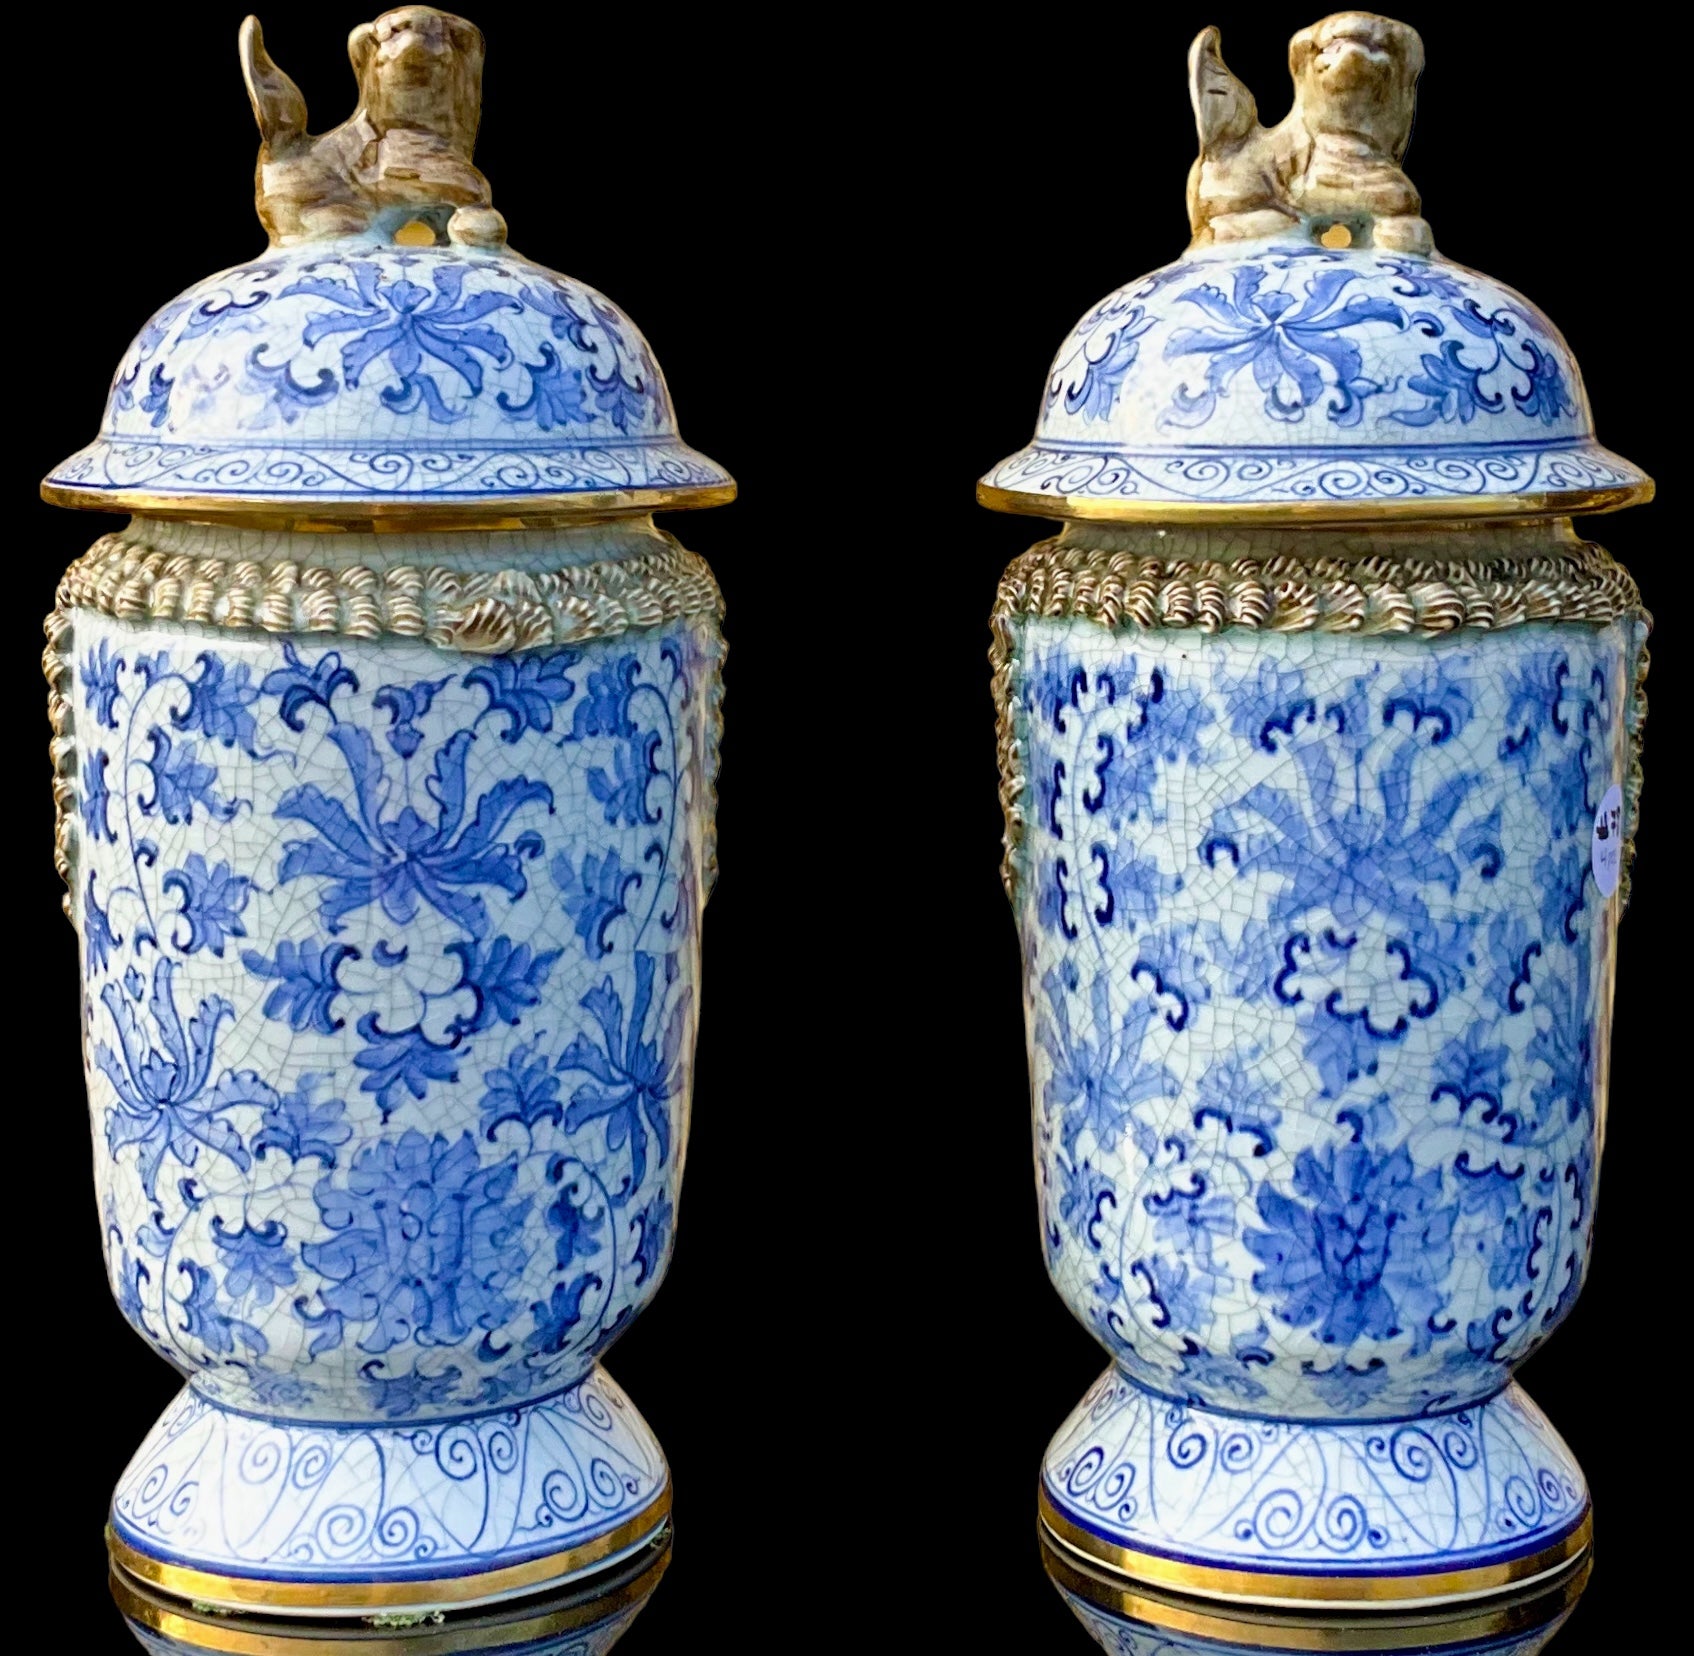 Dies ist ein schönes Paar von chinesischen Export-Stil blau und weiß Keramik Ingwer Gläser. Sie sind mit vergoldeten Akzenten und Hundeknäufen versehen. Die Töpferware ist absichtlich rissig. Sie sind gekennzeichnet.